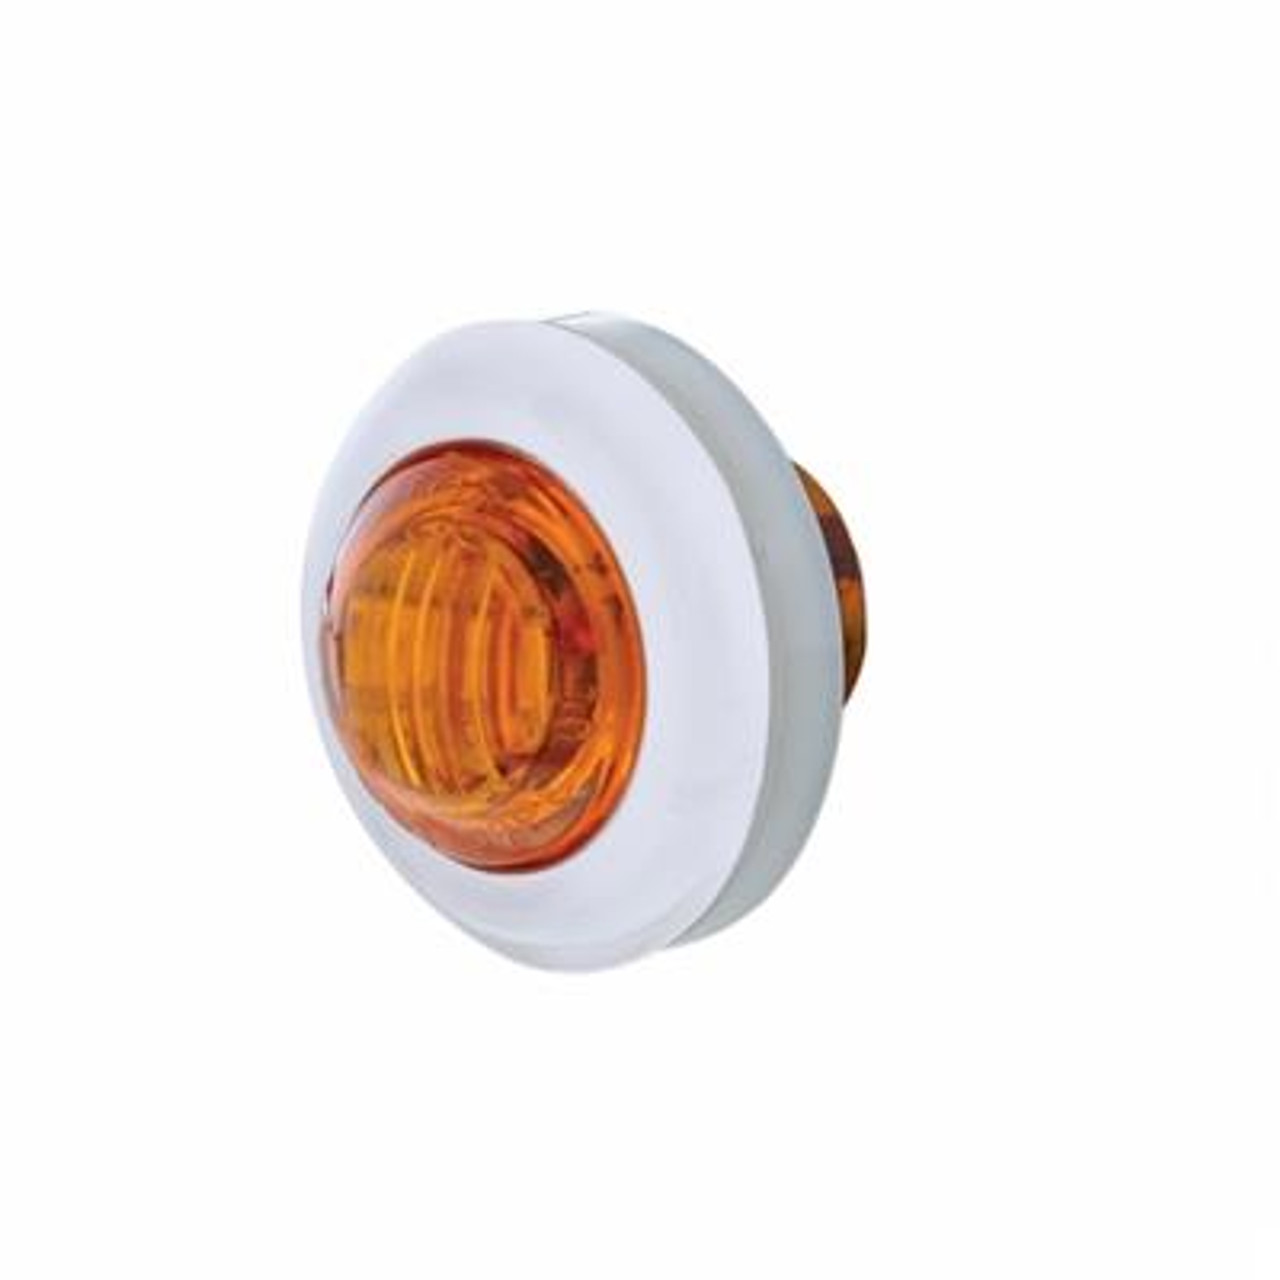 3 LED Dual Function Mini Auxiliary/Utility Light With Bezel & Washer - Amber LED/Amber Lens